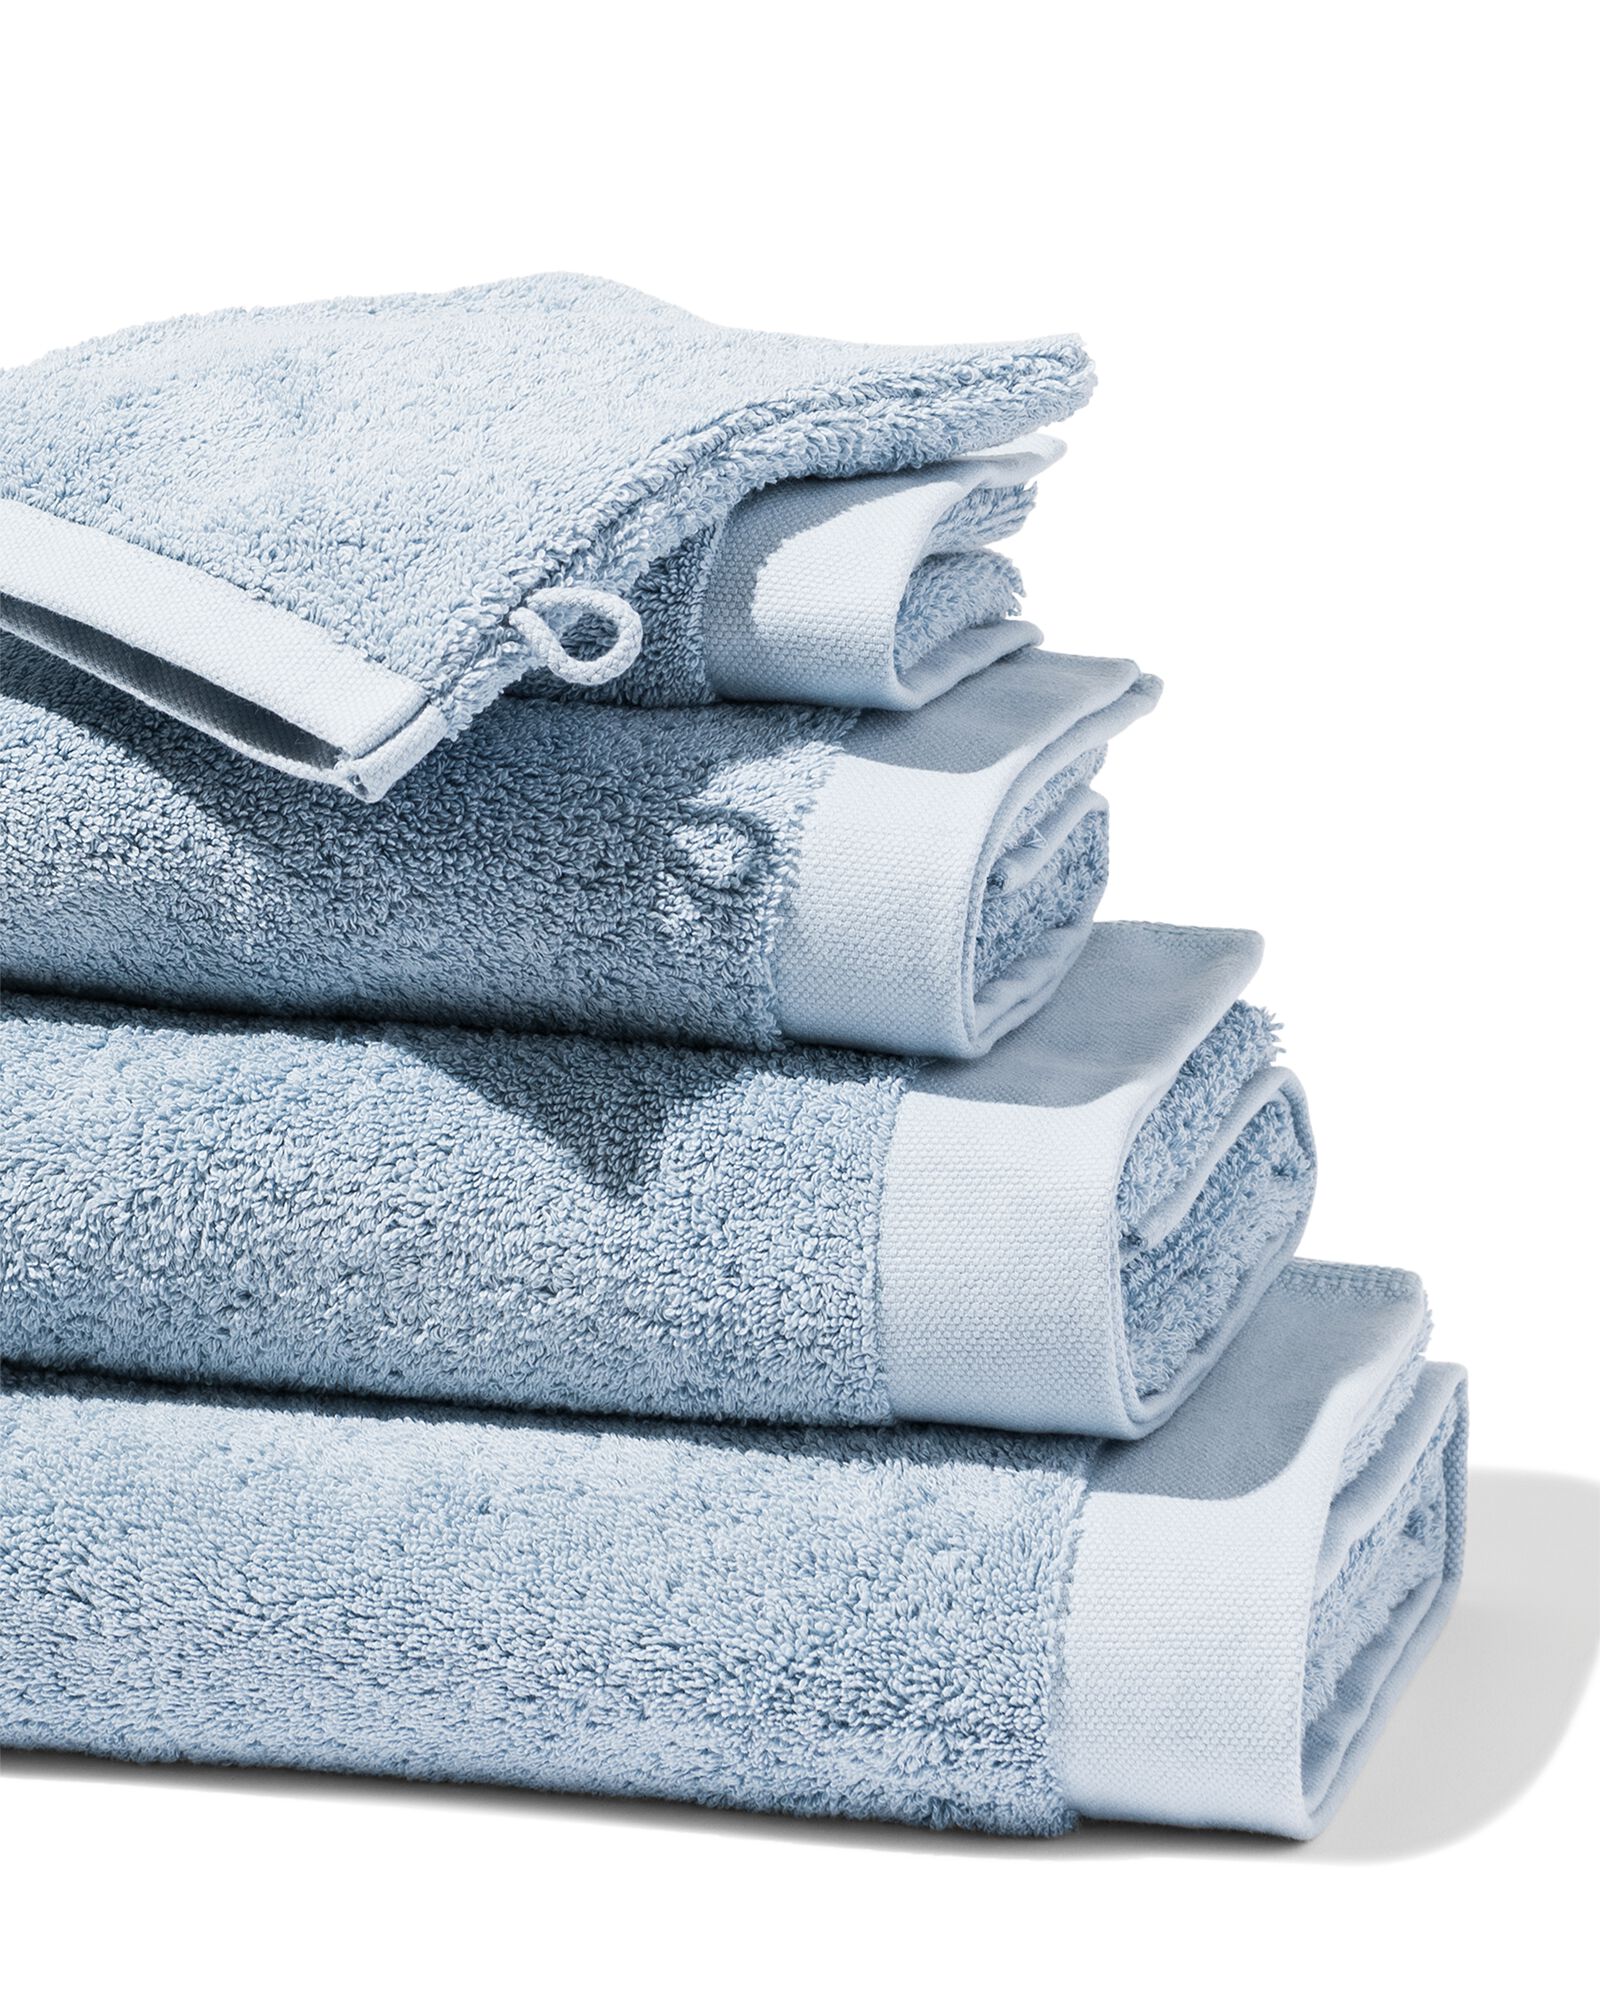 lokaal diepvries Antecedent handdoeken - hotel extra zacht ijsblauw - HEMA